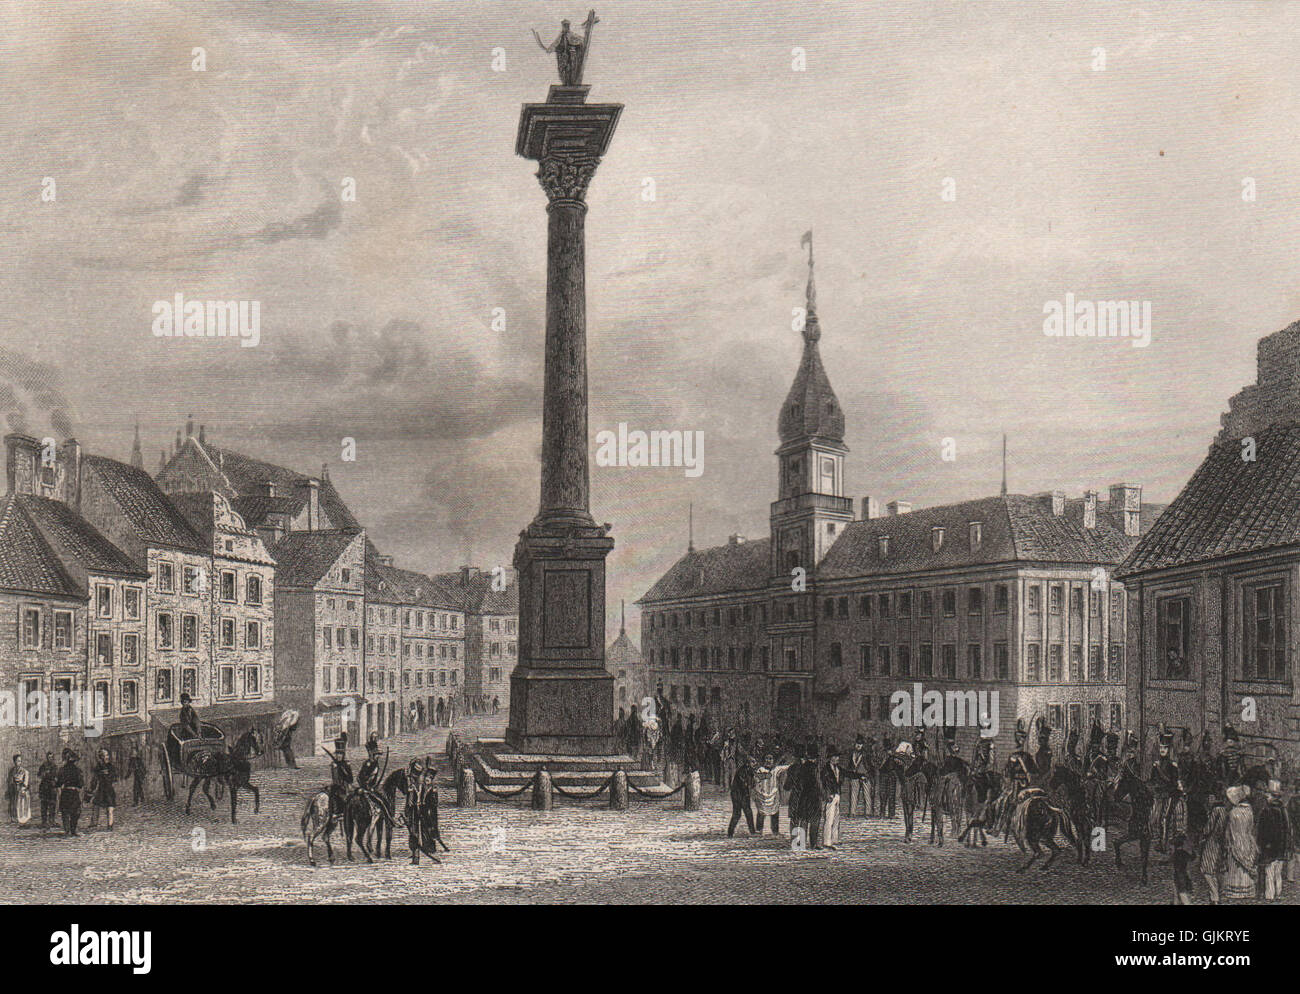 WARSAW. 'Varsovie'. Sigismund's Column /Kolumna Zygmunta, Castle Square, 1855 Stock Photo